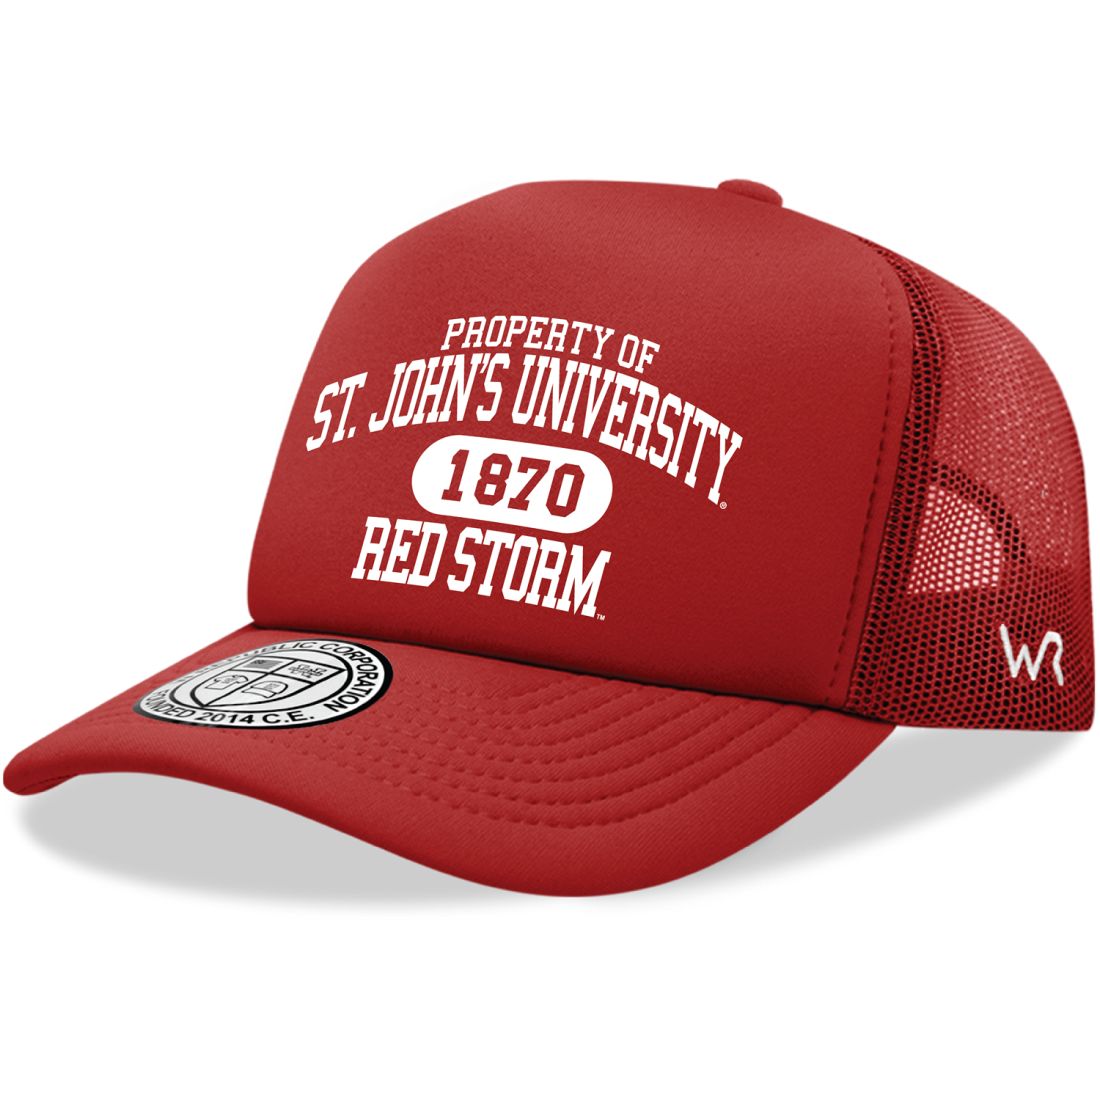 St. John's University Red Storm Property Foam Trucker Hats